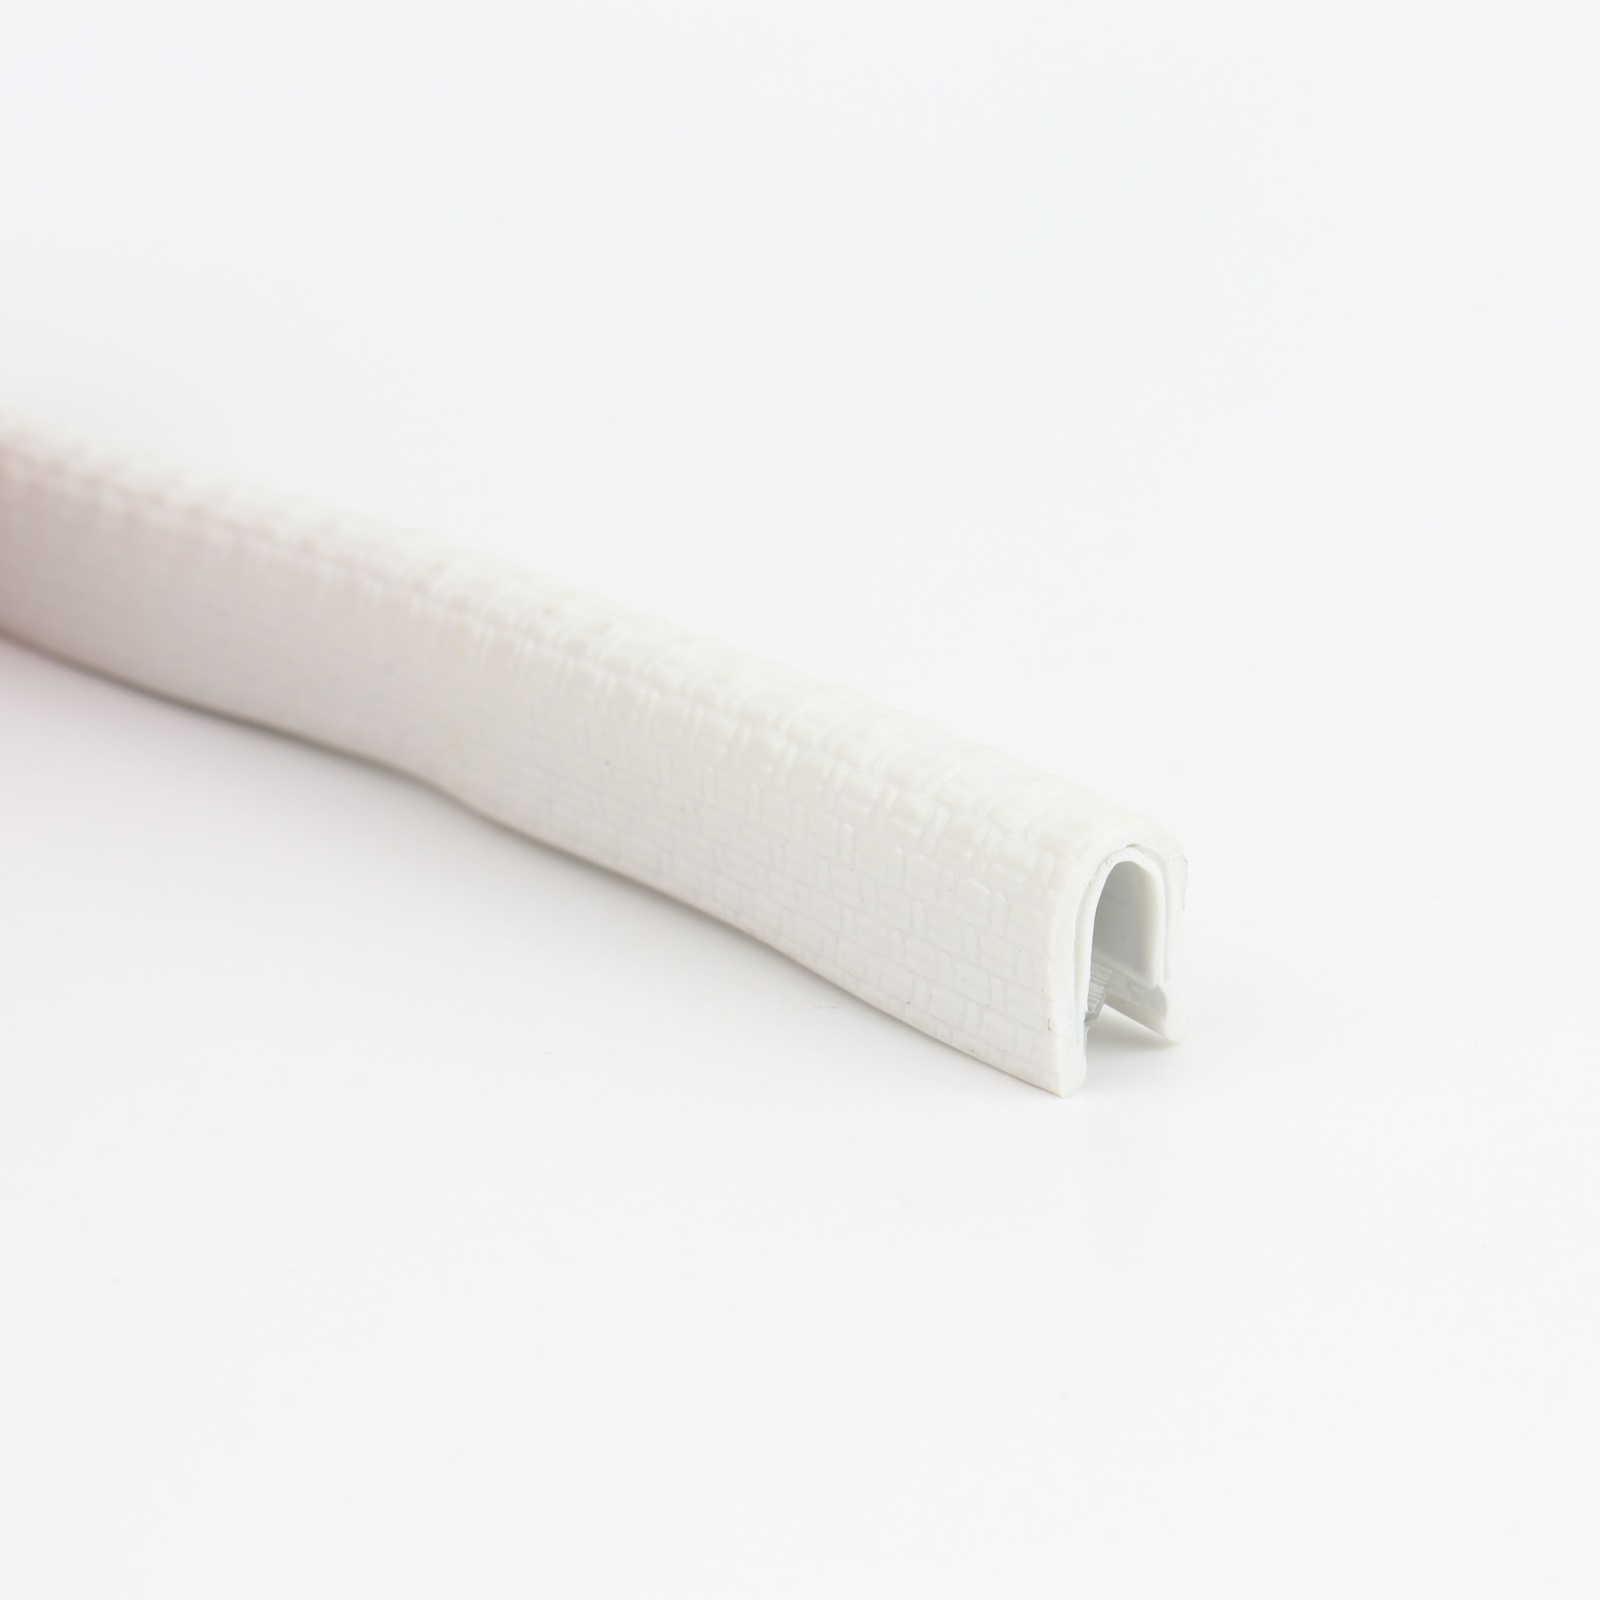 Kantenschutzprofil - PVC - weiss - Klemmbereich 1-2mm